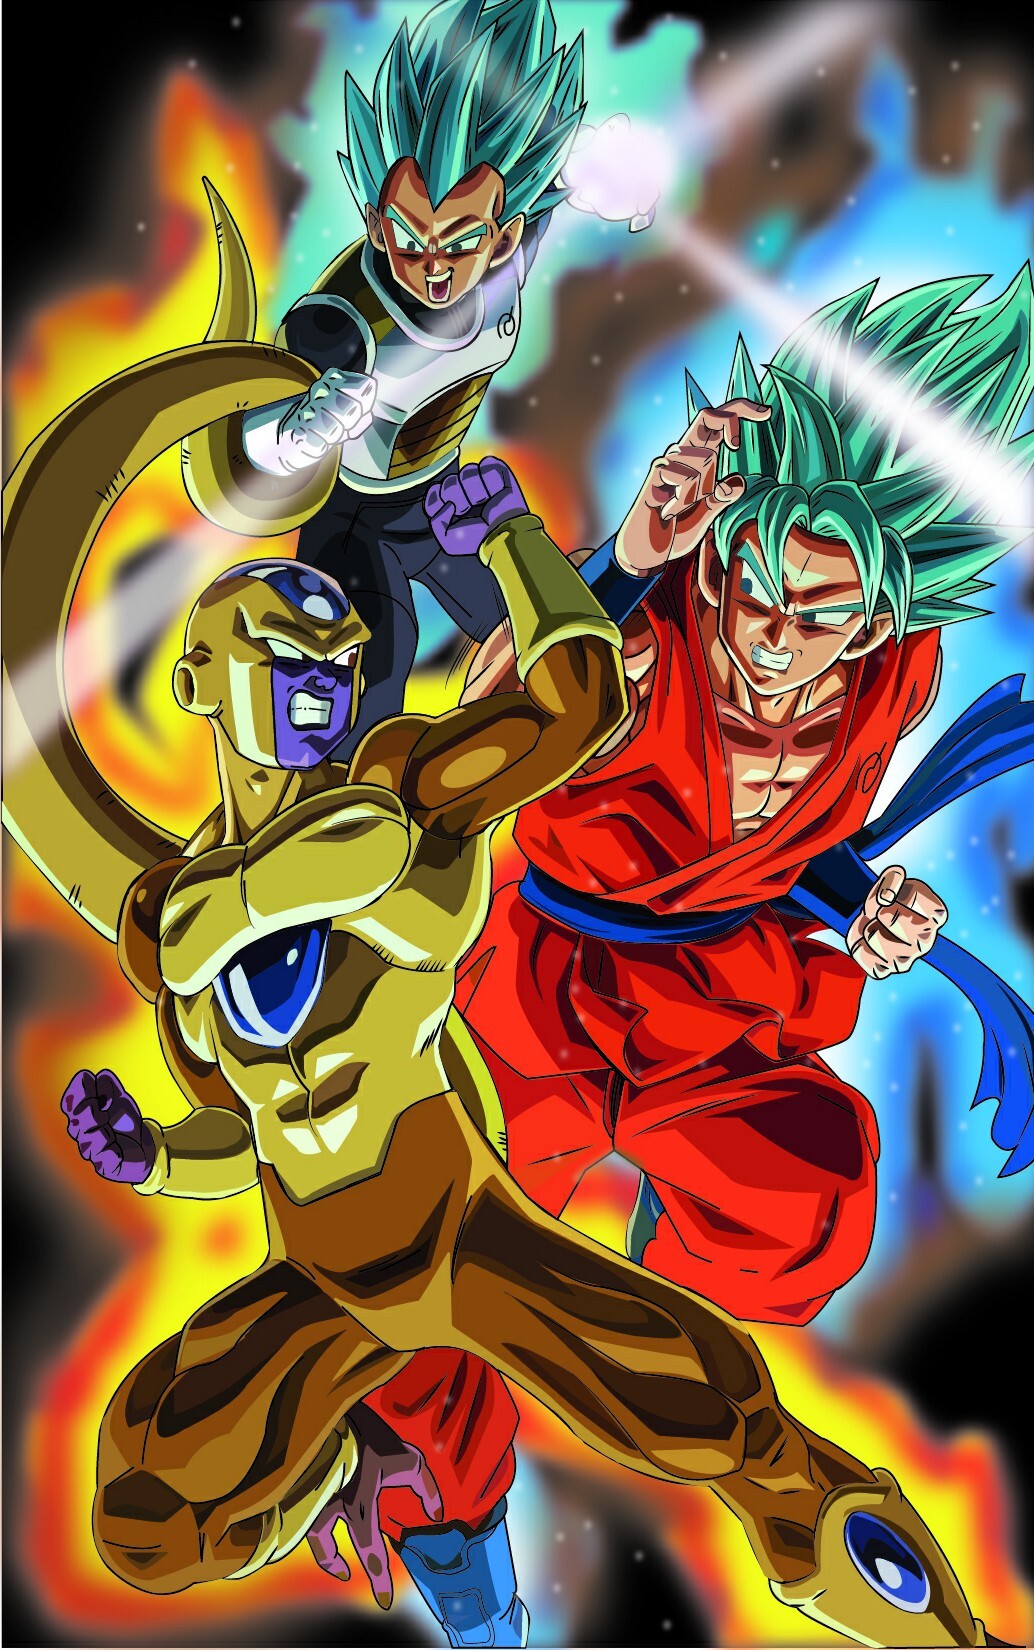 Goku Blue vs Golden Freeza, fanart